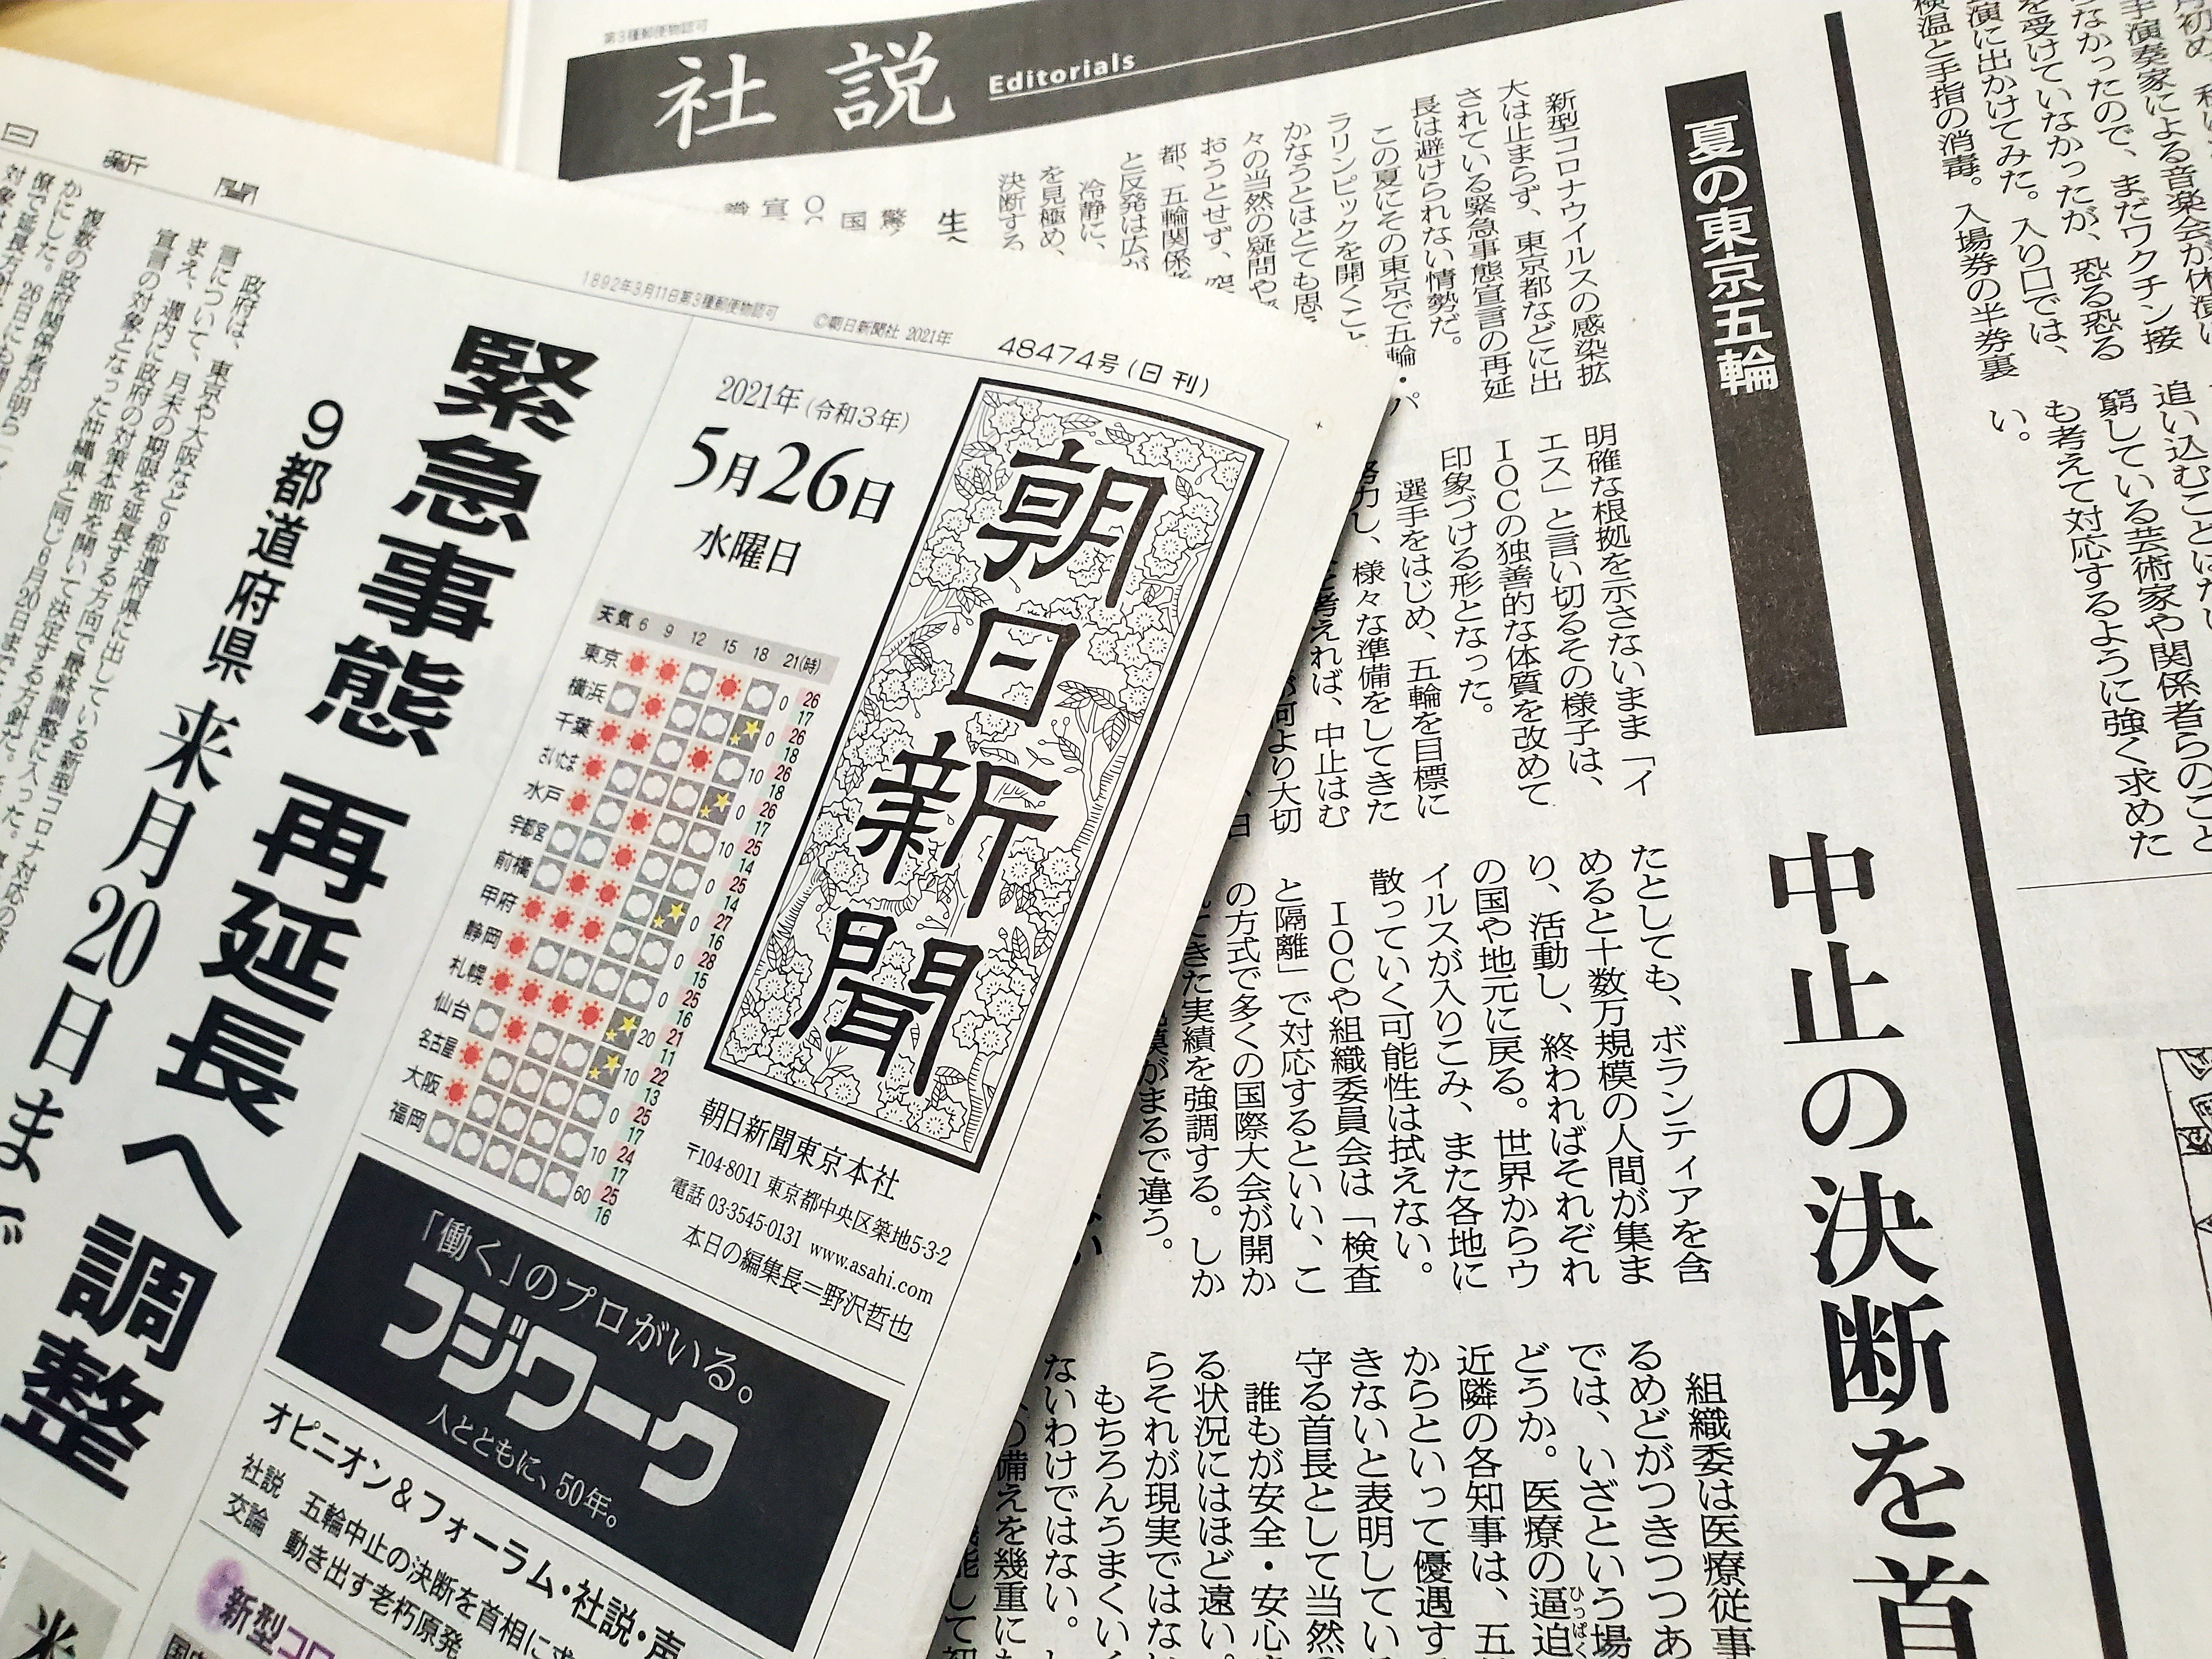 일본 아사히신문이 5월 26일 자에서 “스가 요시히데 총리에게 도쿄올림픽 중지(취소) 결단을 촉구한다”는 내용의 사설을 게재했다.